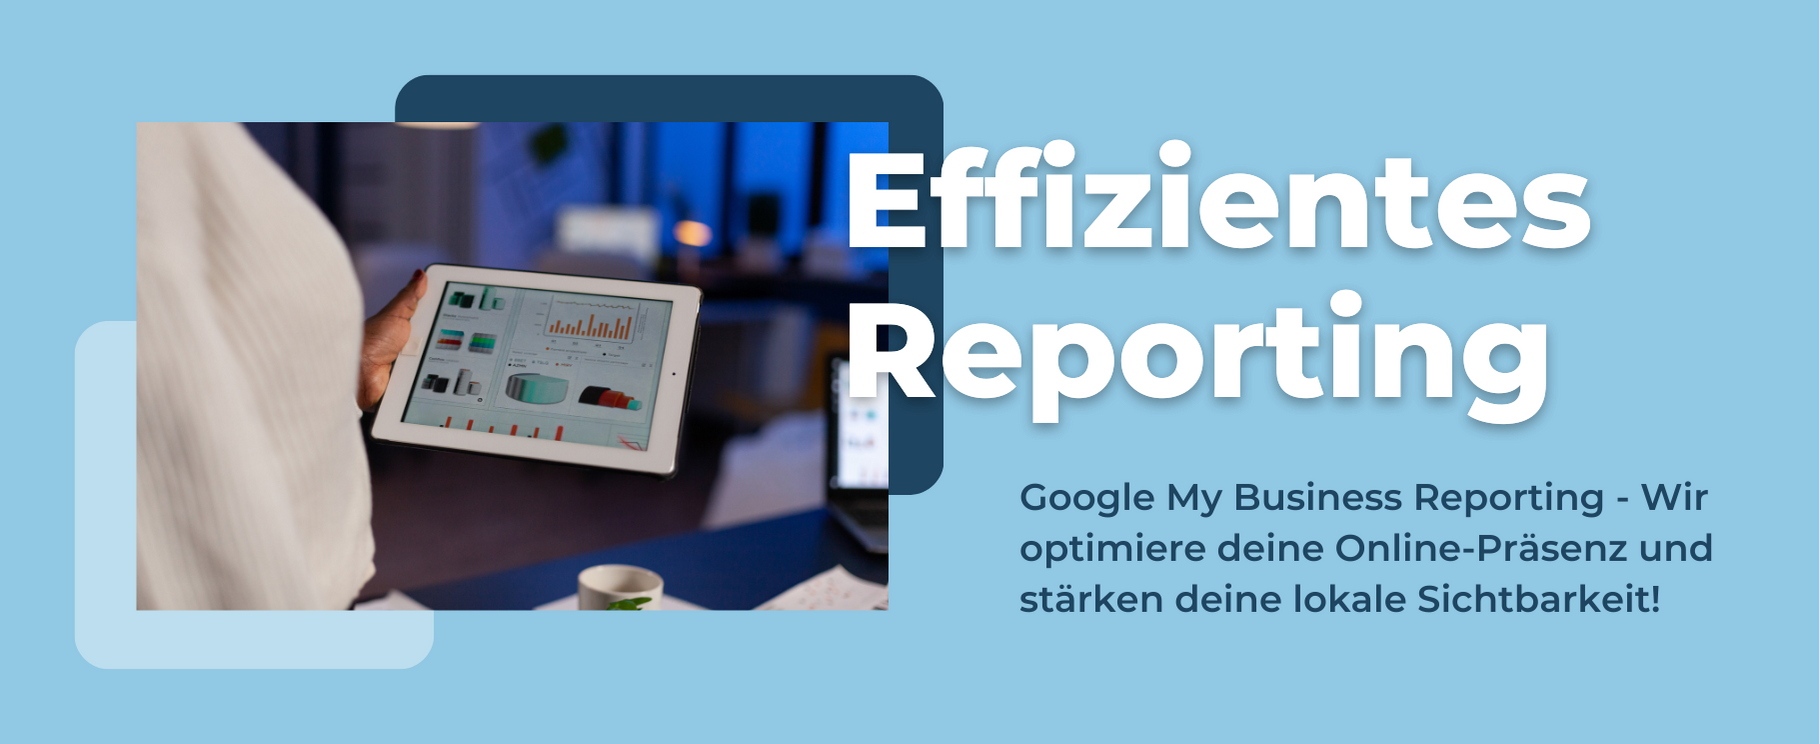 Effizientes Reporting für Google My Business mit Klickkonzept